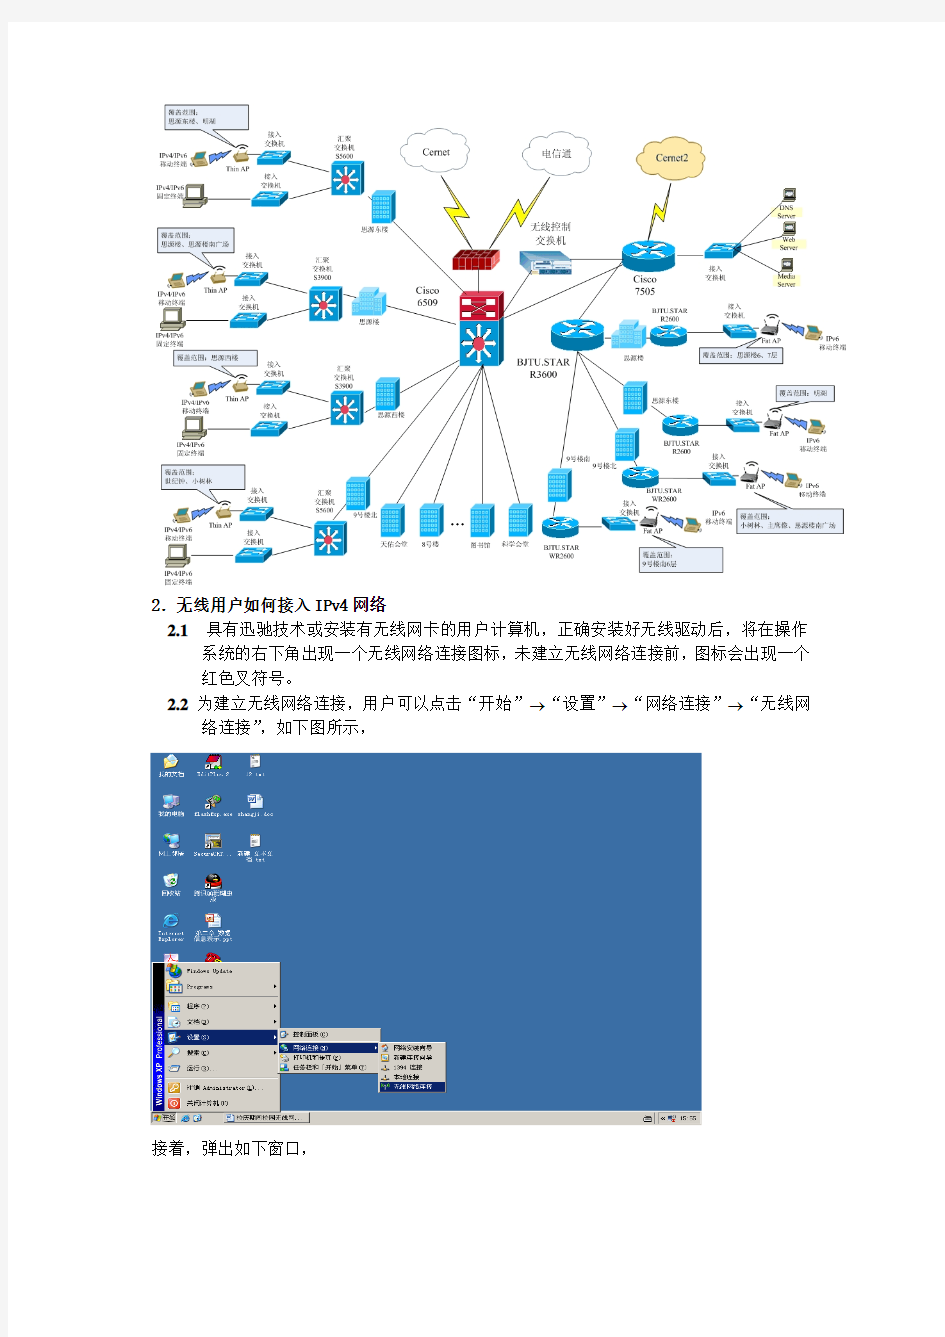 北京交通大学校园无线网络使用指南